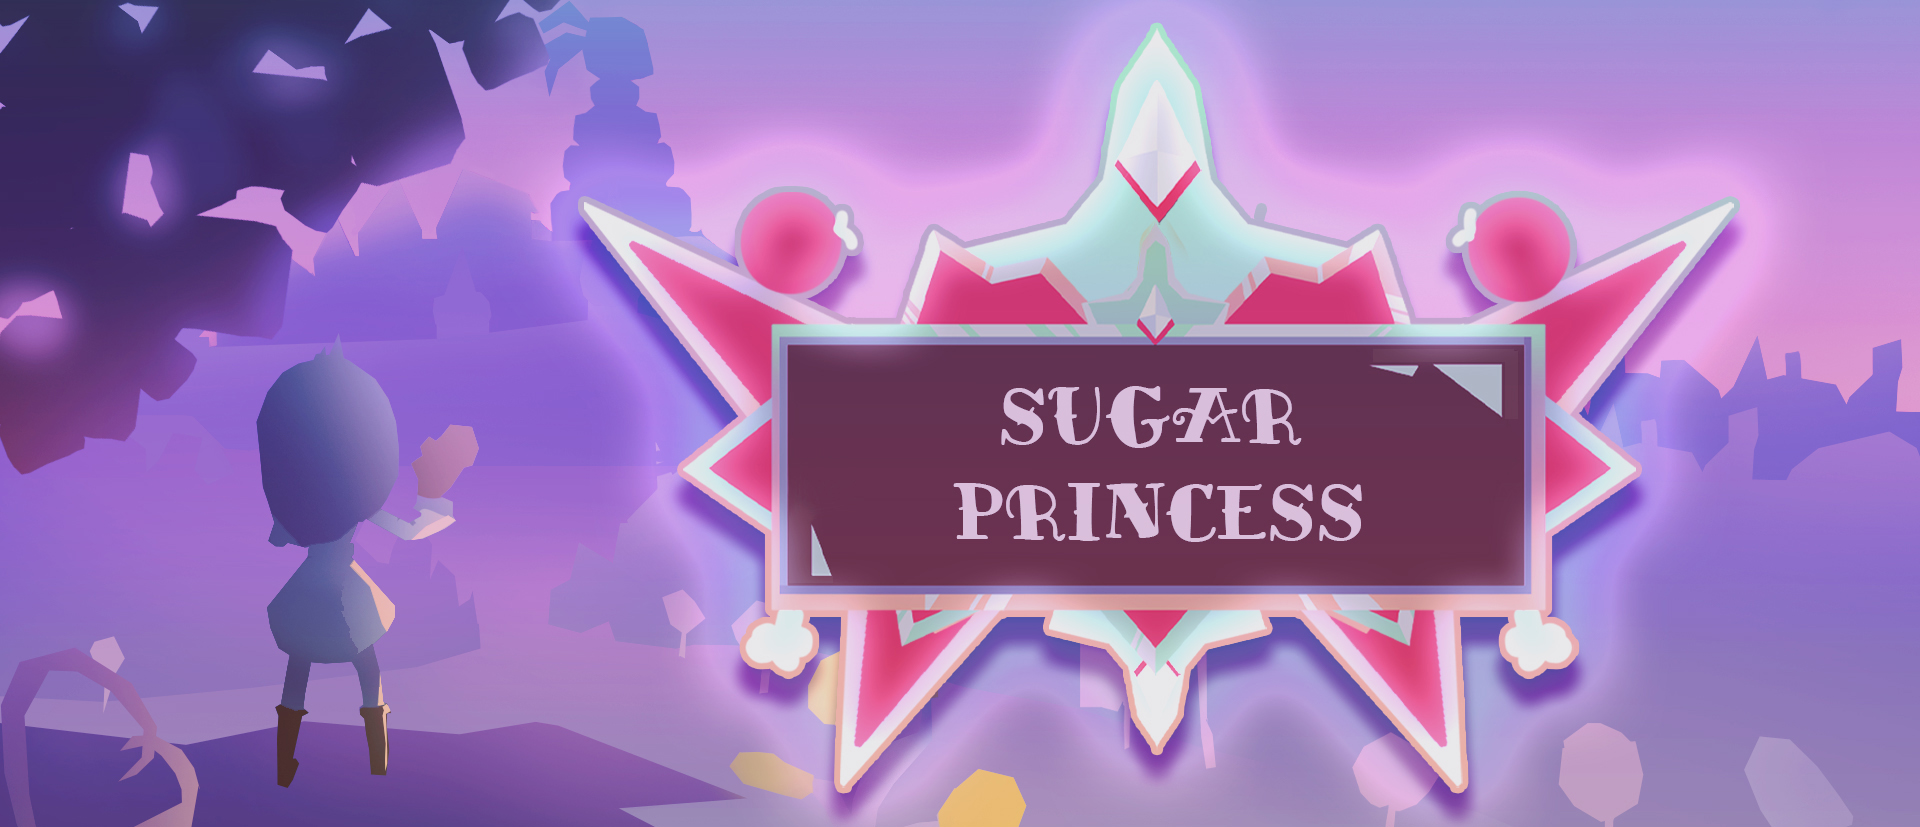 Sugar Princess